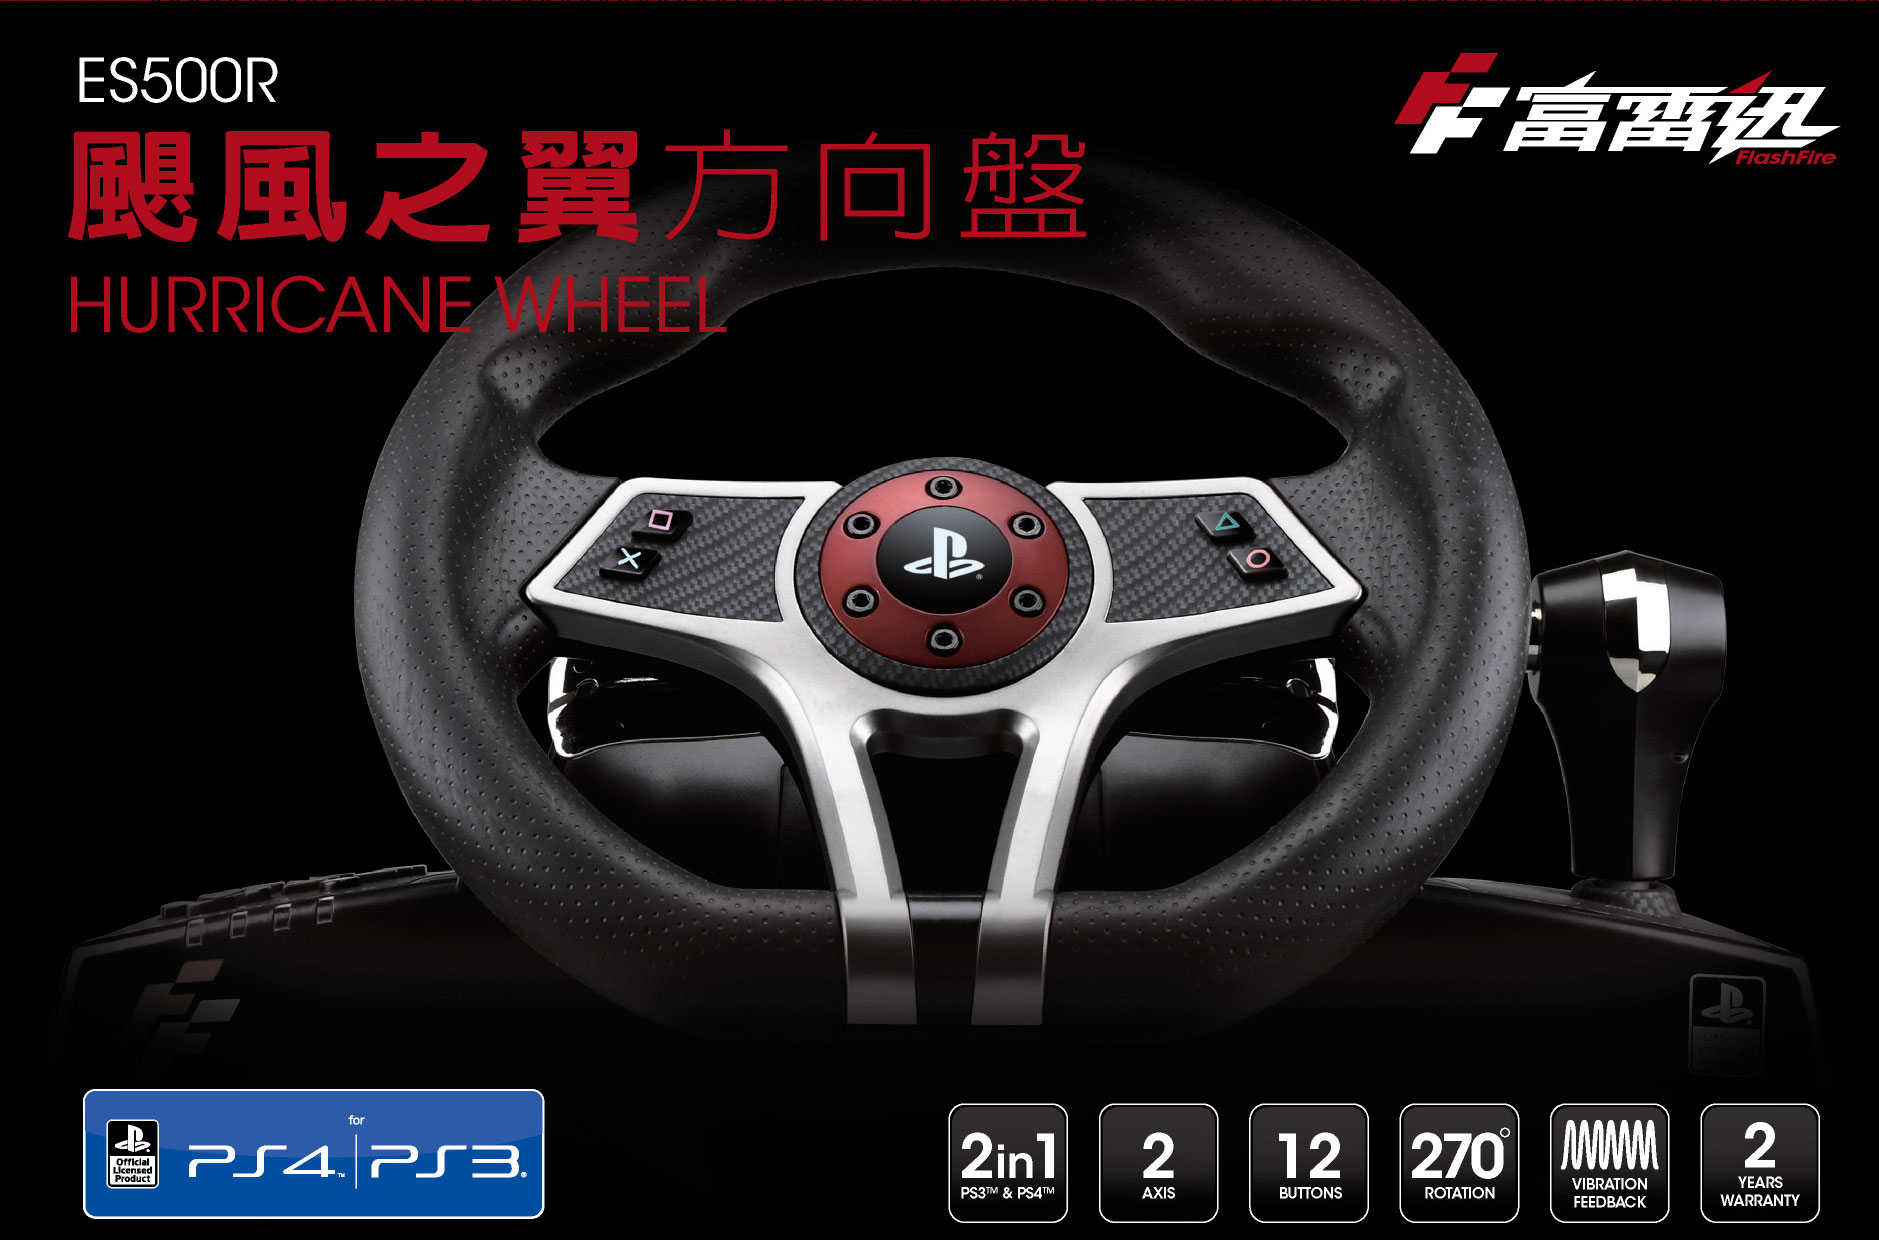 【一起玩】FlashFire 富雷迅 颶風之翼  ES500R 賽車方向盤 支援PS4&PS3所有賽車遊戲 也支援PC